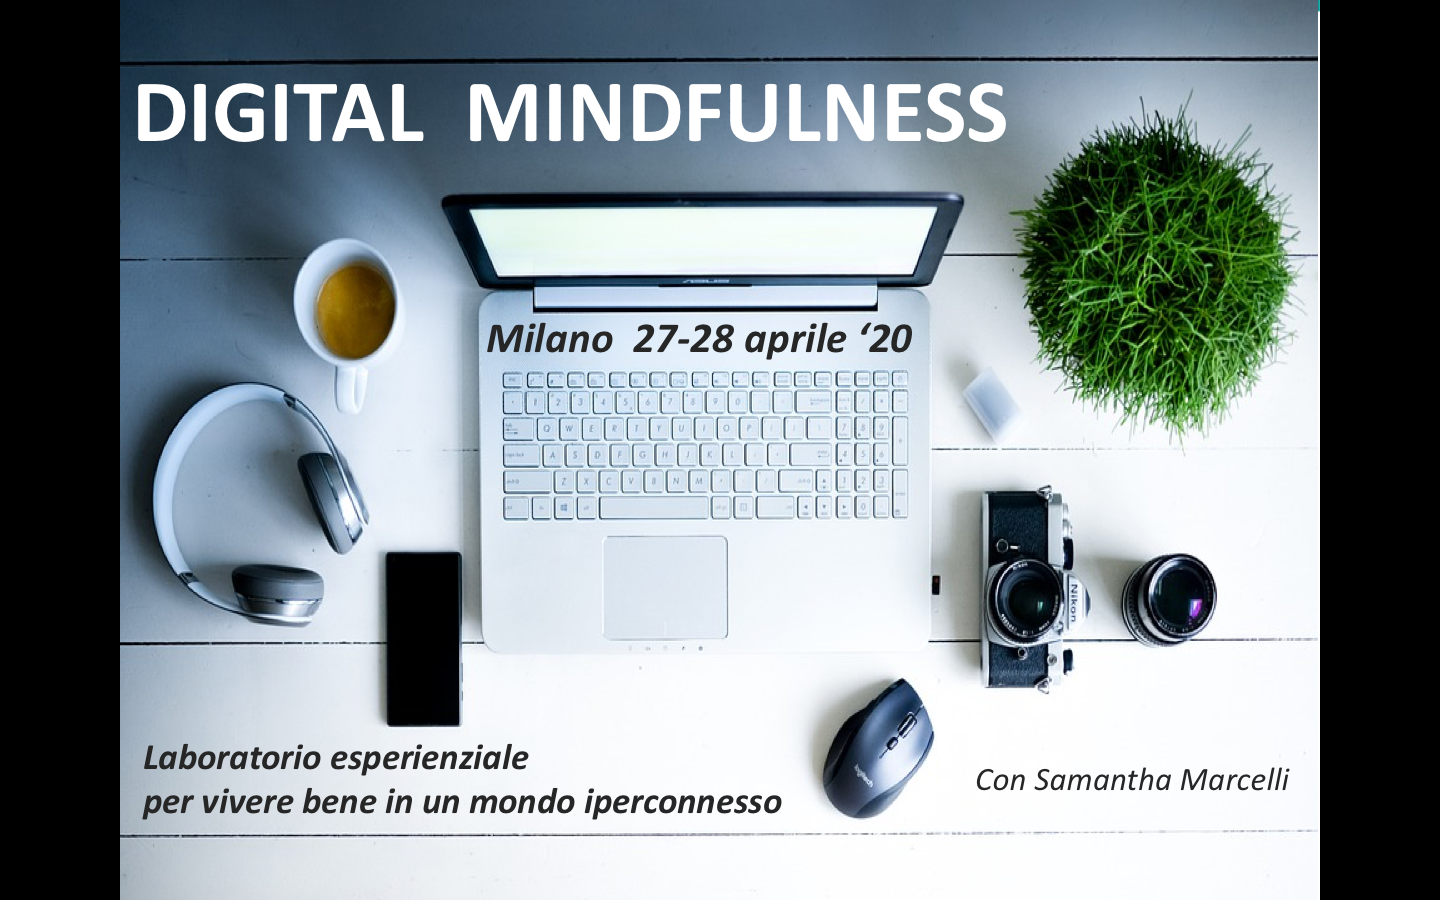 Labratorio esperienziale di Digital Mindfulness Milano Aprile 2020